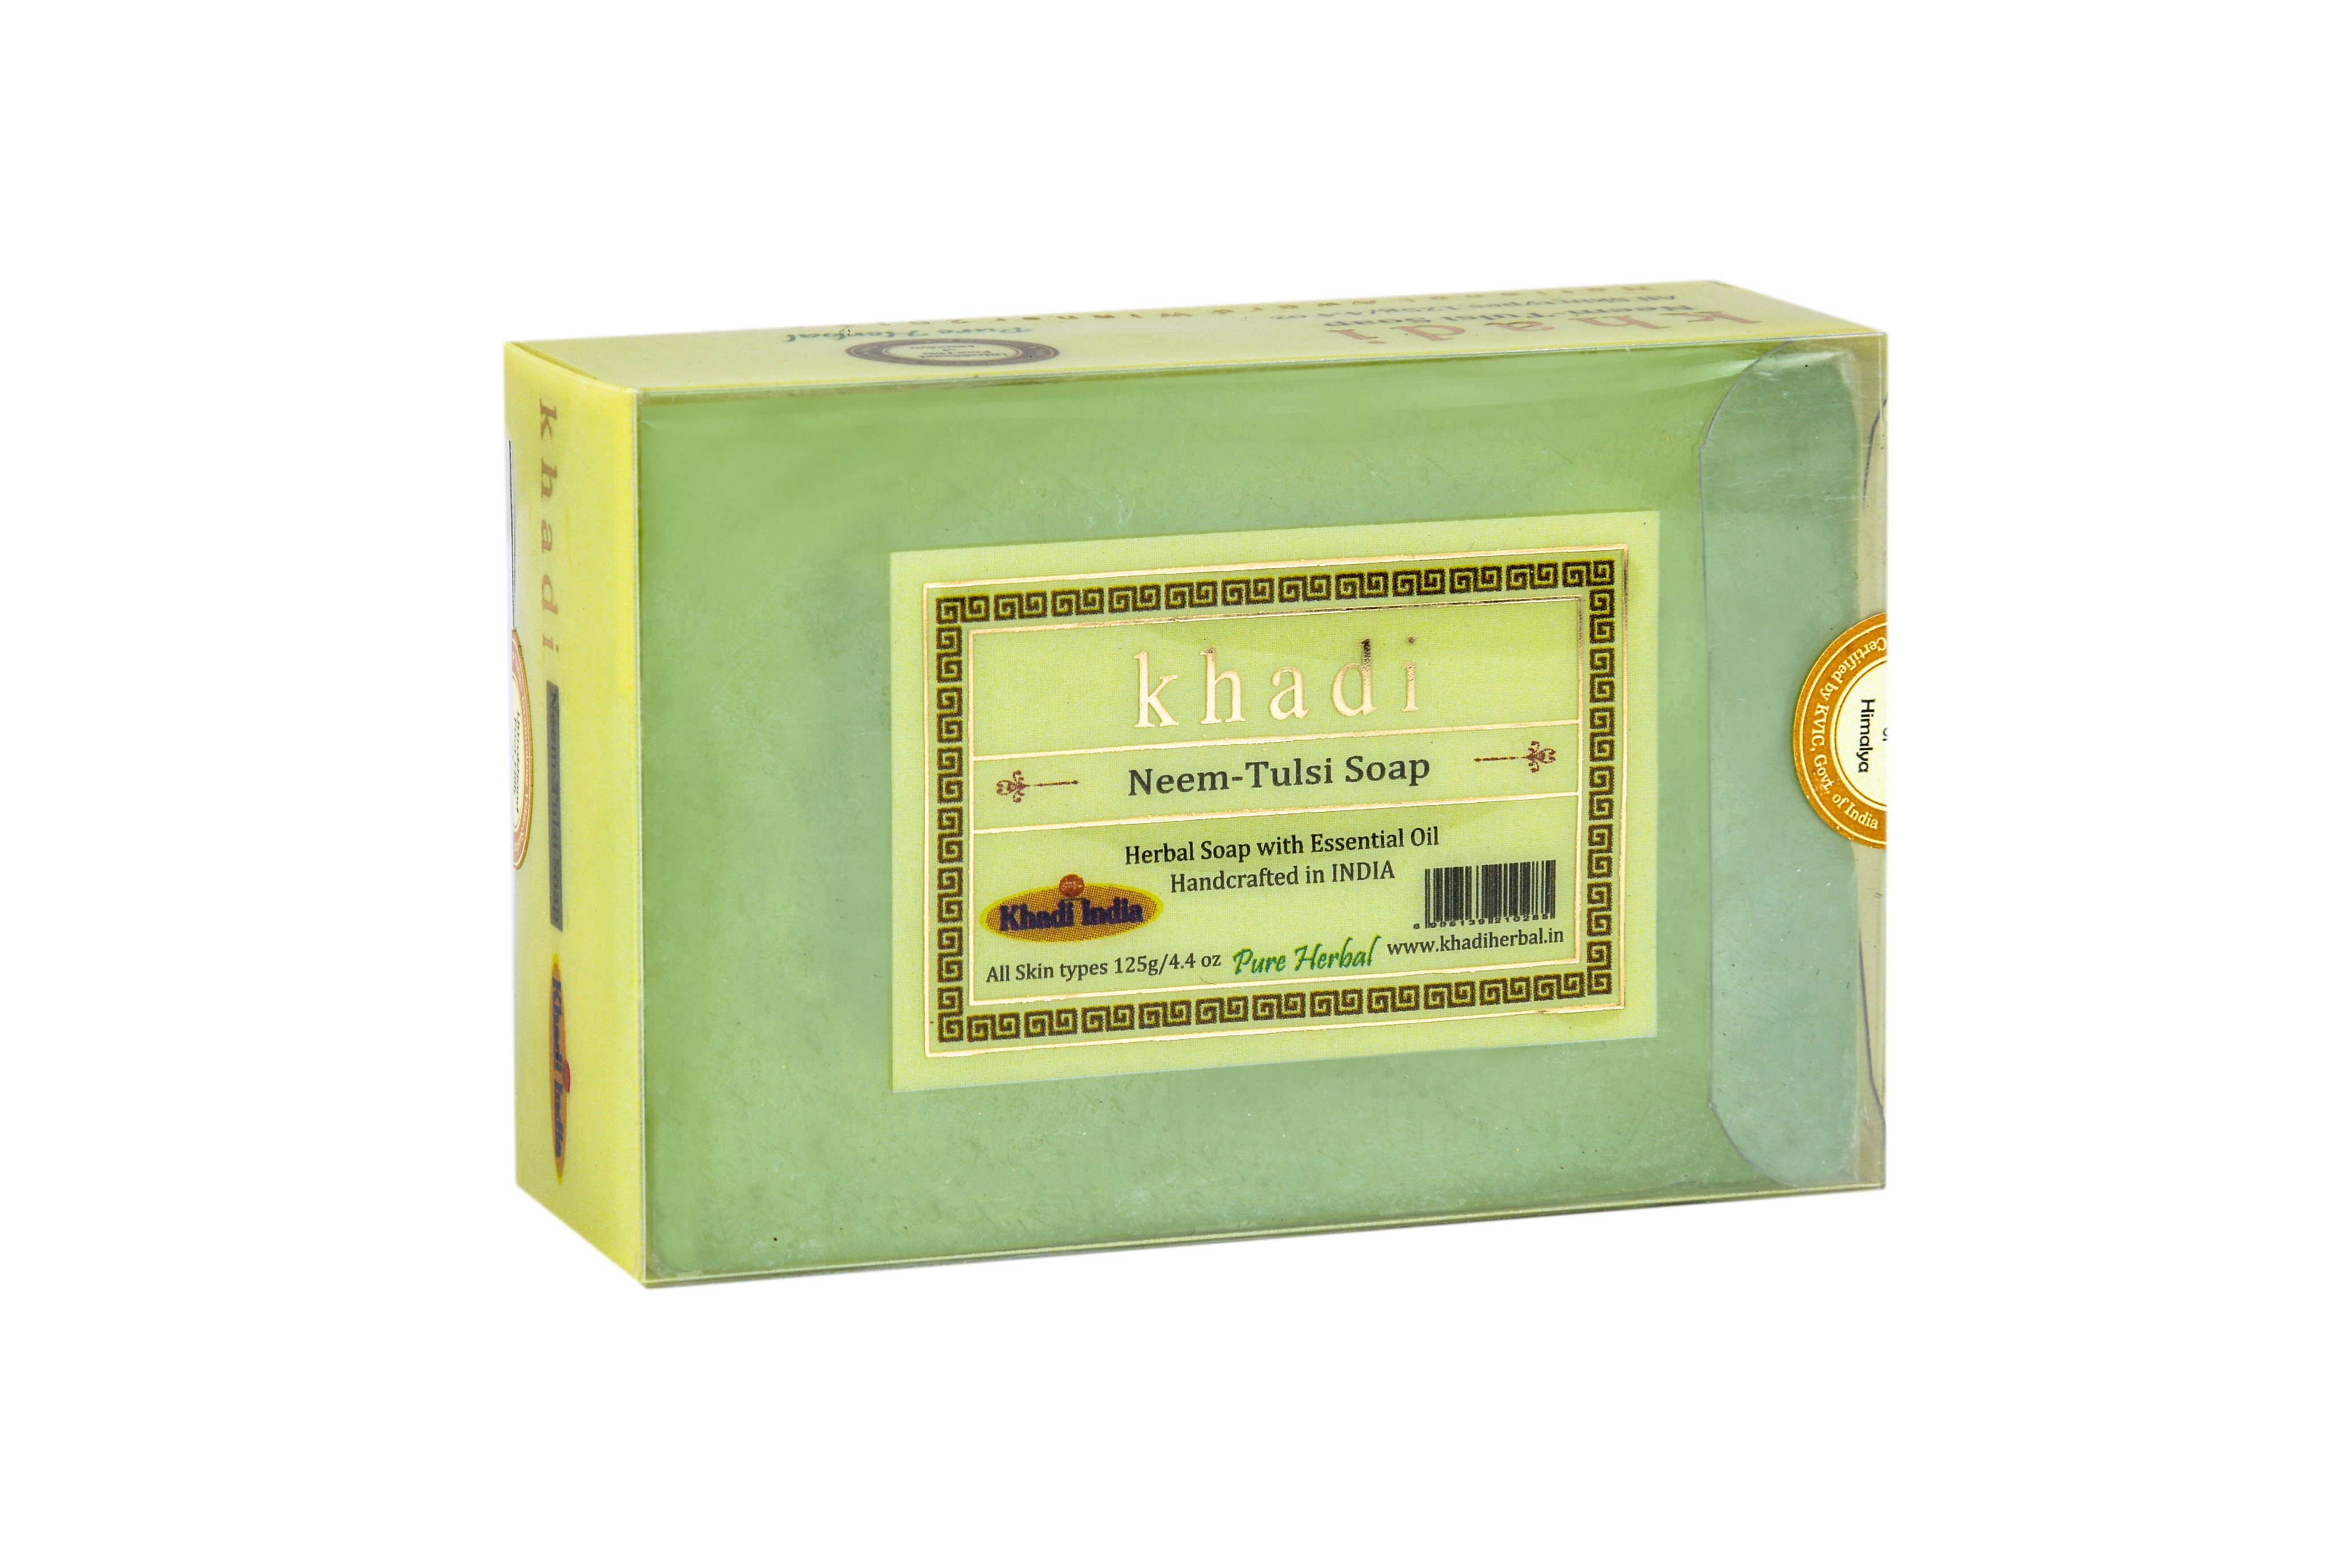 Khadi NEEM-TULSI SOAP, Khadi India (НИМ-ТУЛСИ МЫЛО ручной работы с эфирными маслами, Кхади Индия), 125 г.